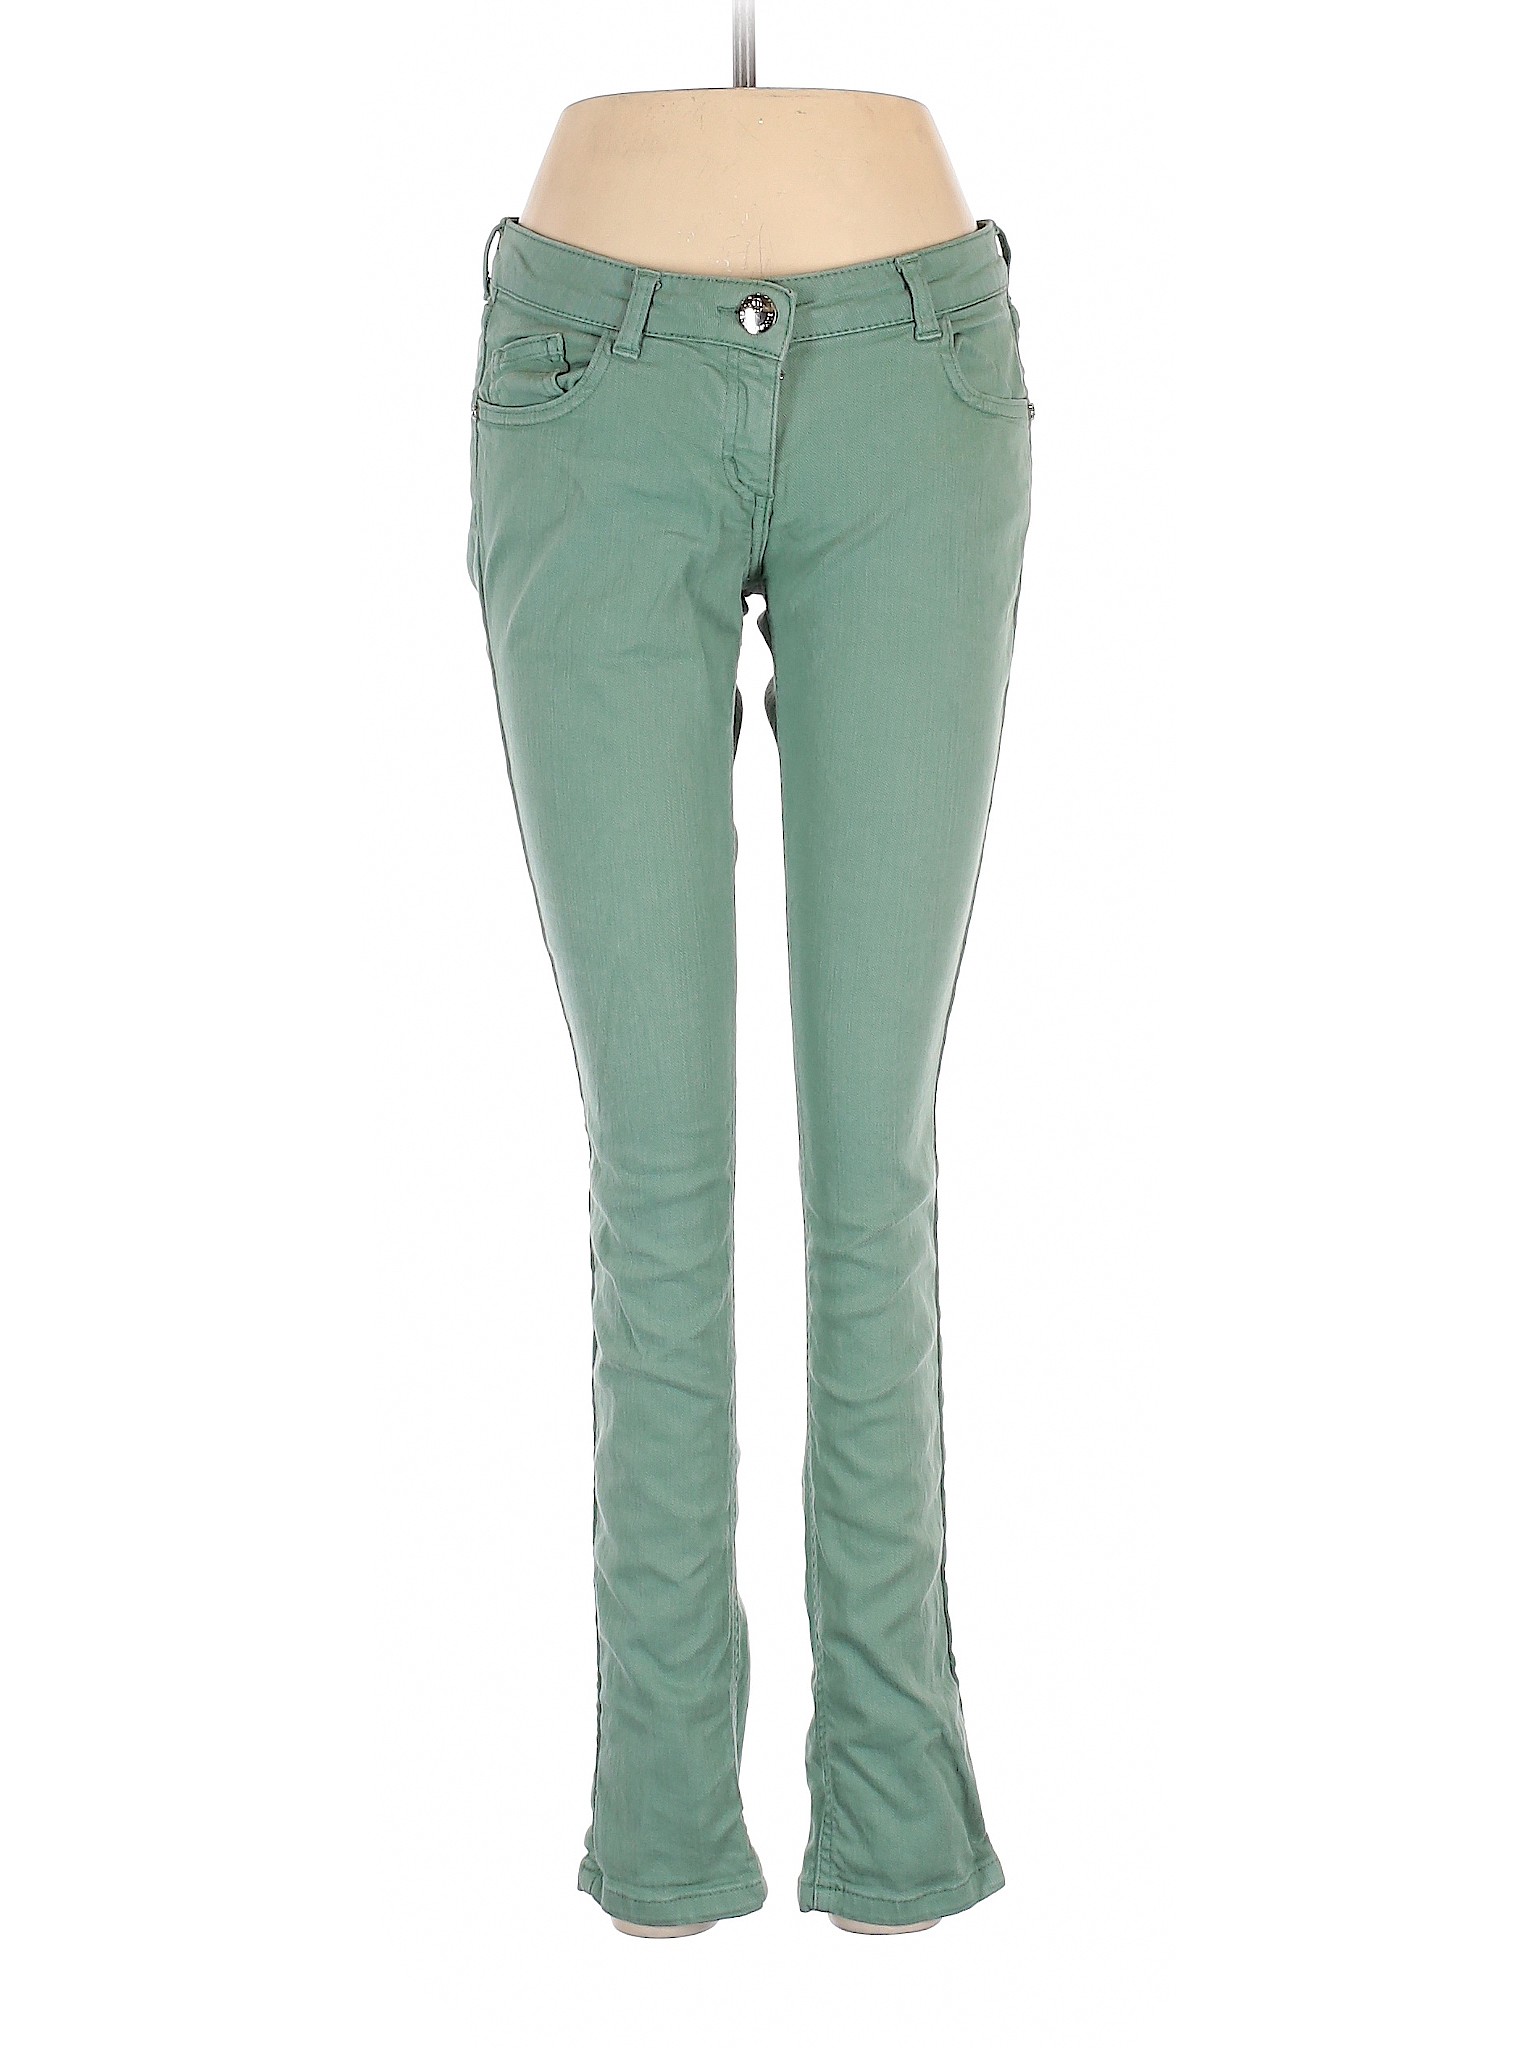 Follies Women Green Jeans 28W | eBay